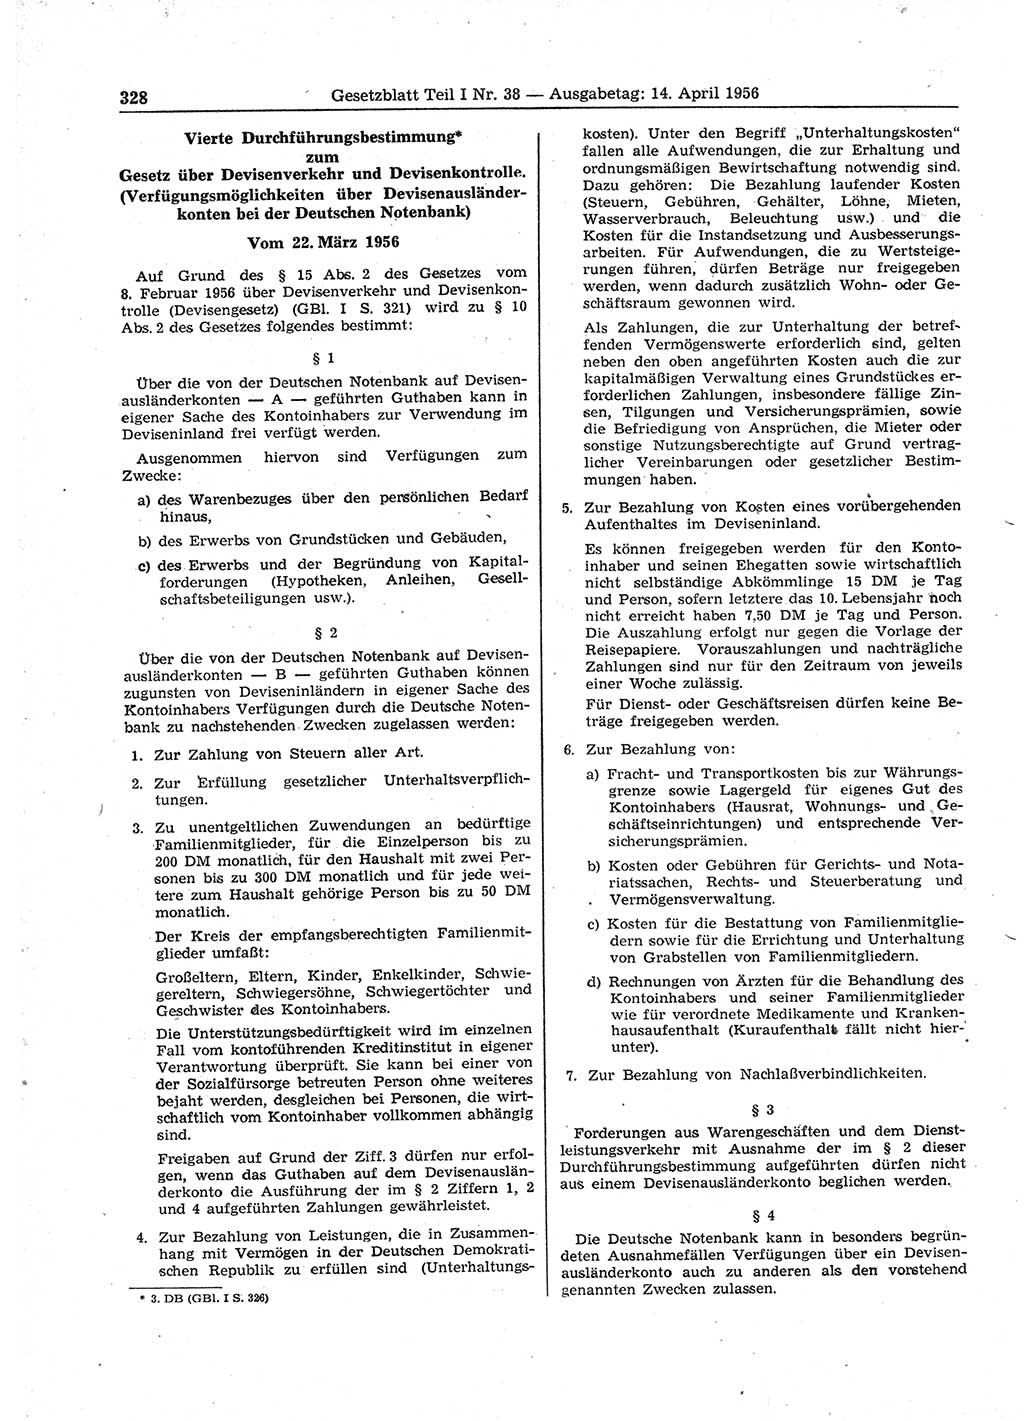 Gesetzblatt (GBl.) der Deutschen Demokratischen Republik (DDR) Teil Ⅰ 1956, Seite 328 (GBl. DDR Ⅰ 1956, S. 328)